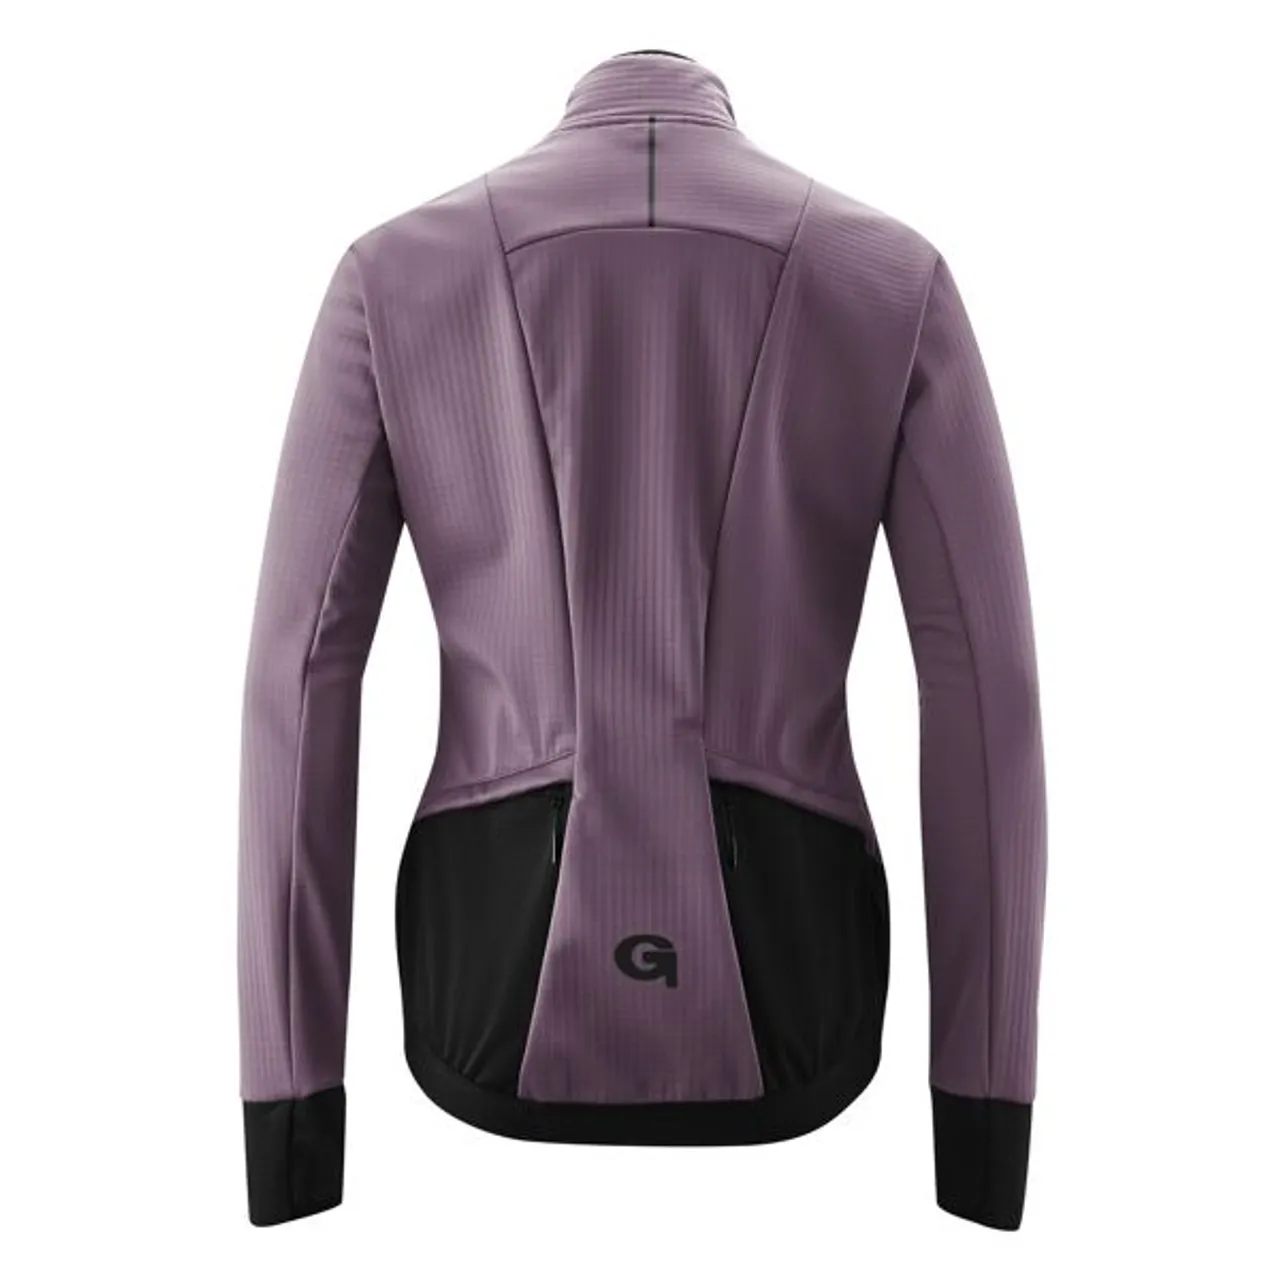 Fahrradjacke GONSO "SASSONE" Gr. 44, lila (aubergine) Damen Jacken Wasserabweisende, strapazierfähige und atmungsaktive Radjacke.